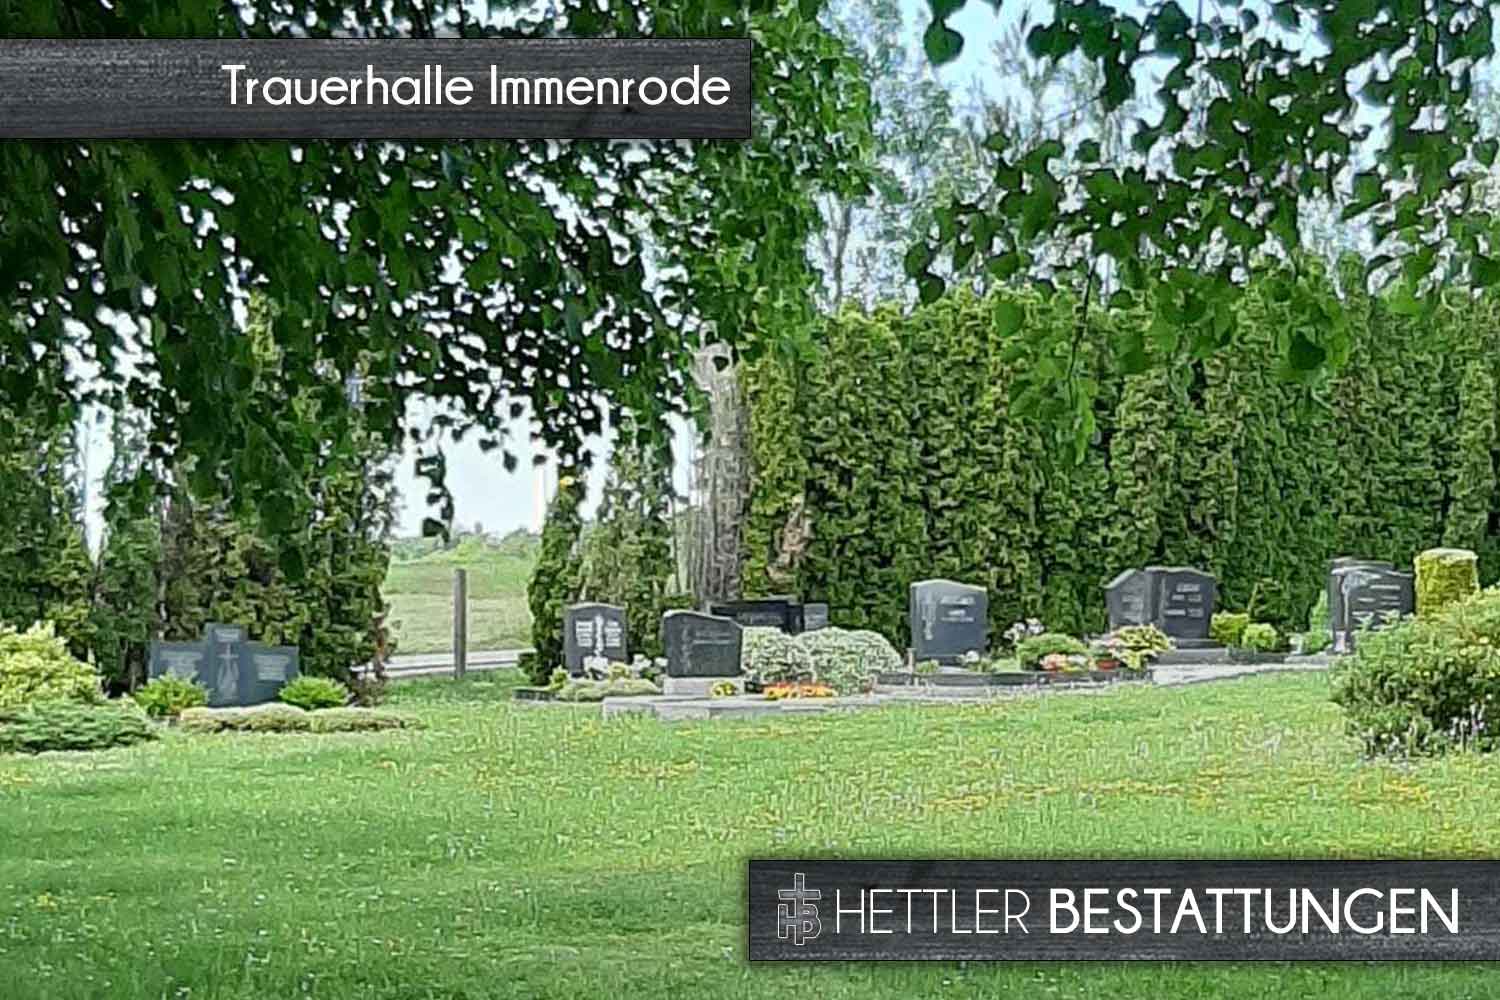 Friedhof in Immenrode. Ihr Ort des Abschieds mit Hettler Bestattungen.